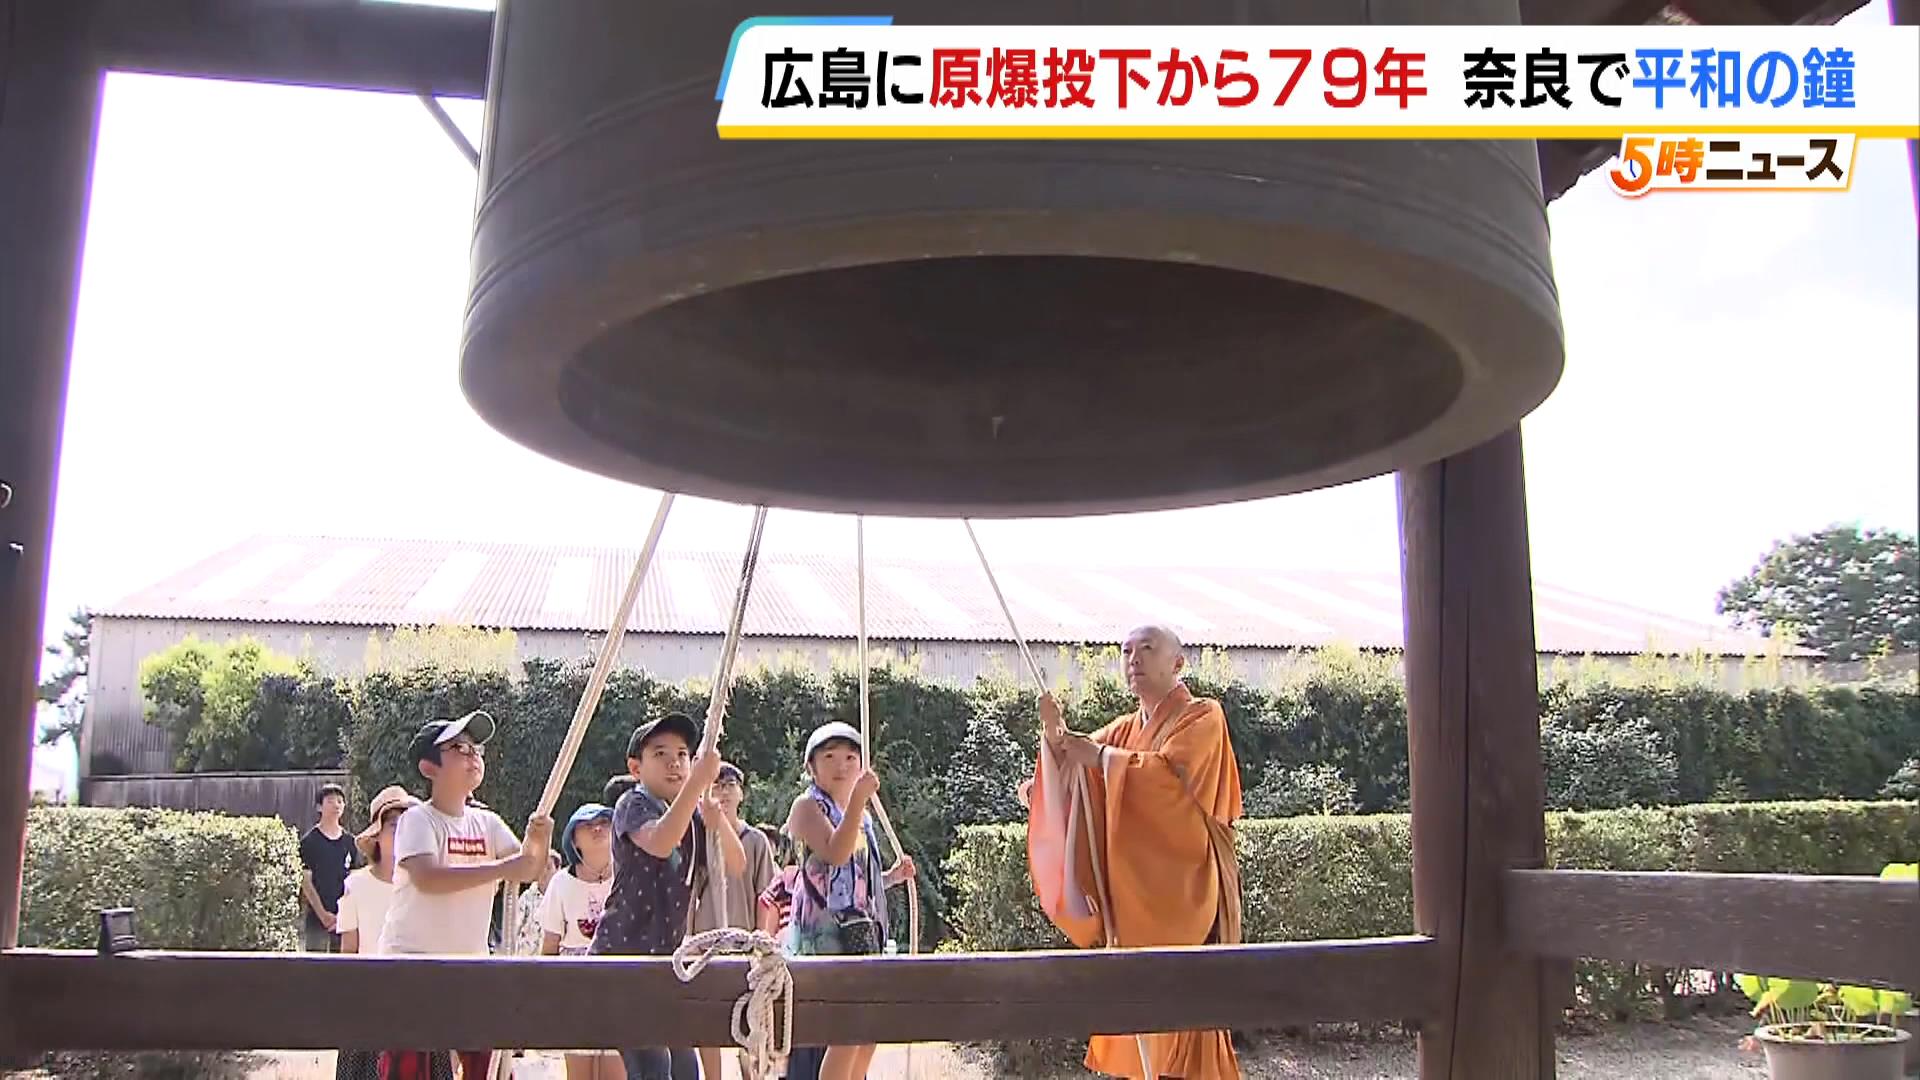 「もう二度と原爆が落ちないように」奈良・薬師寺で小学生らが平和の鐘